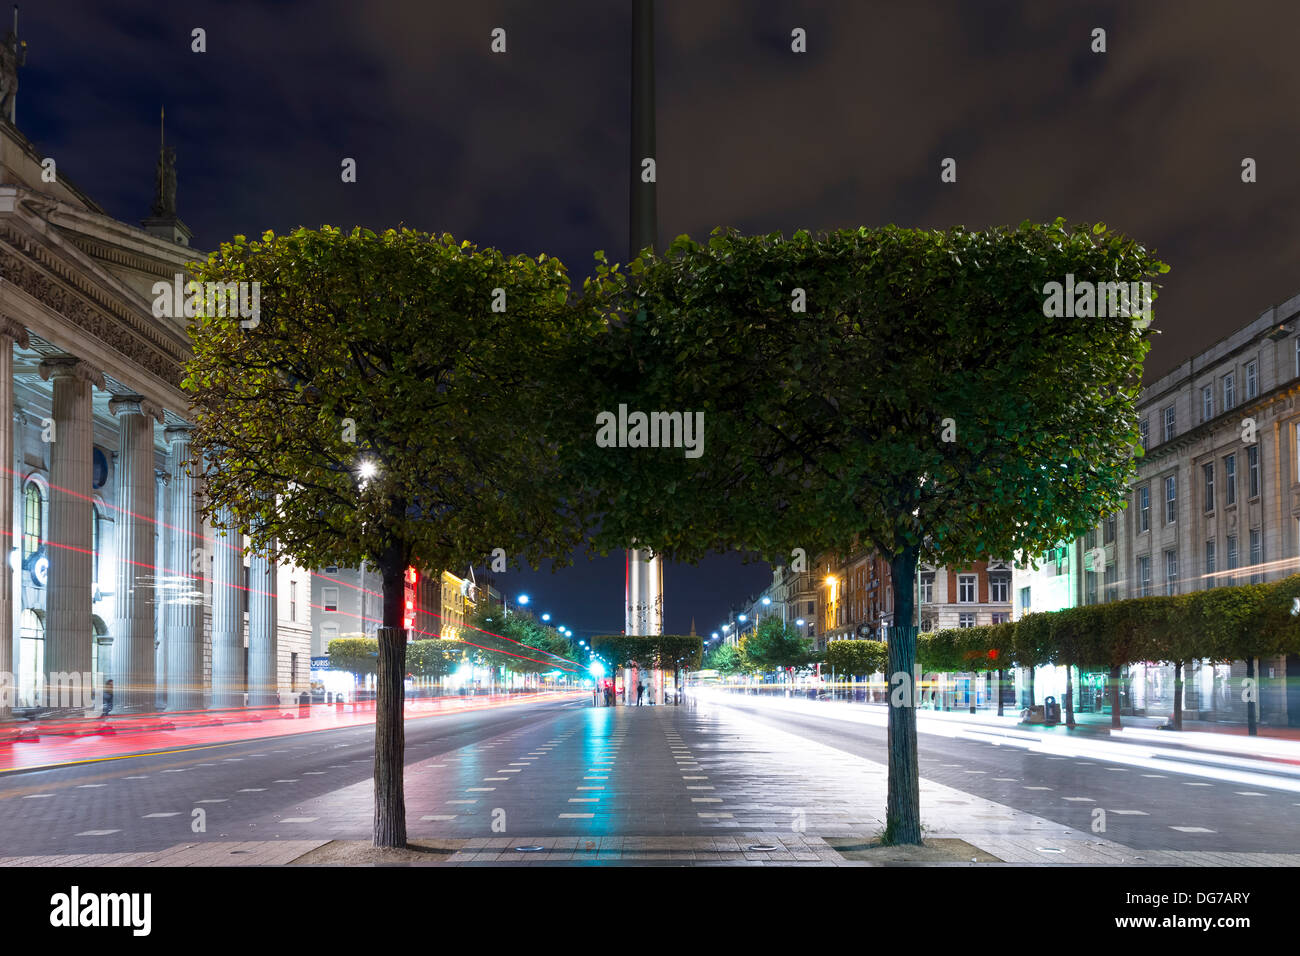 Il punto di vista della guglia di Dublino monumento a O'Connell street al crepuscolo. Traffico passante lasciando sentieri di luce sullo sfondo. Foto Stock